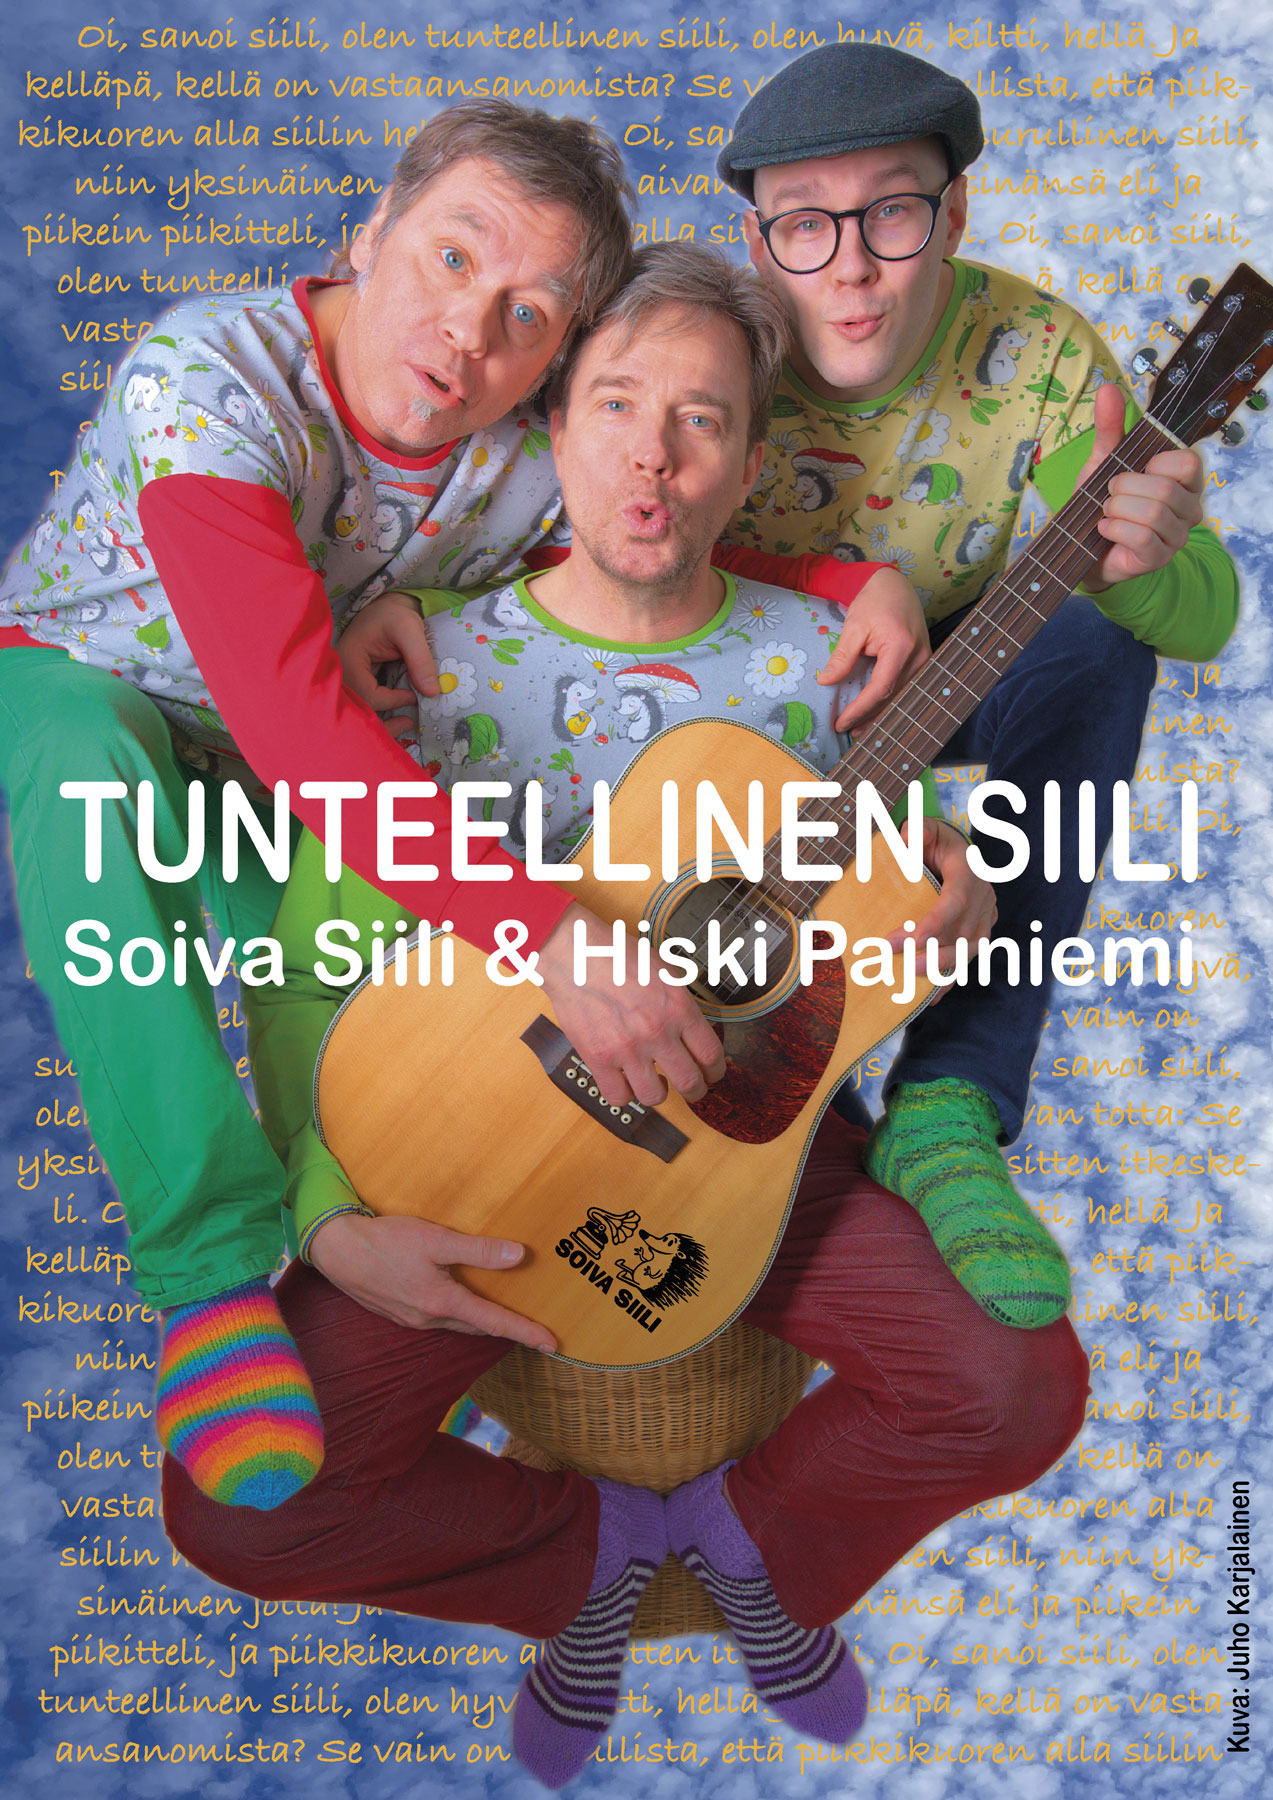 Tunteellinen siili konsertin muusikot Markus Lampela, Kyösti Salmijärvi ja Hiski Pajuniemi yhteiskuvassa